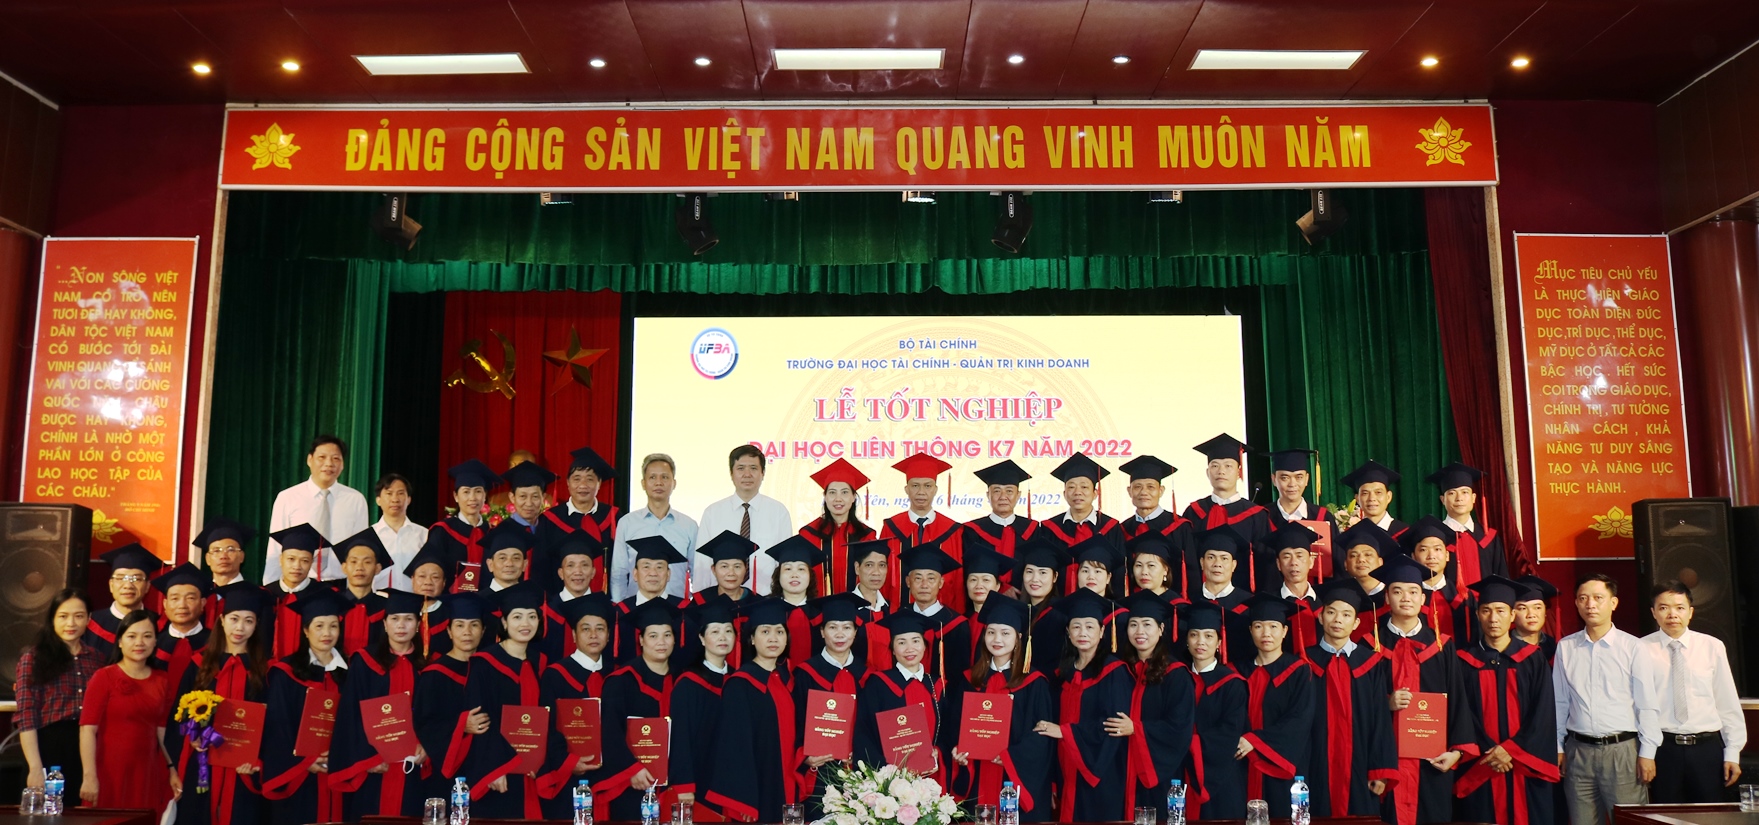 Lễ bế giảng và trao tốt nghiệp đại học liên thông K7 (Khóa học 2019 – 2022)